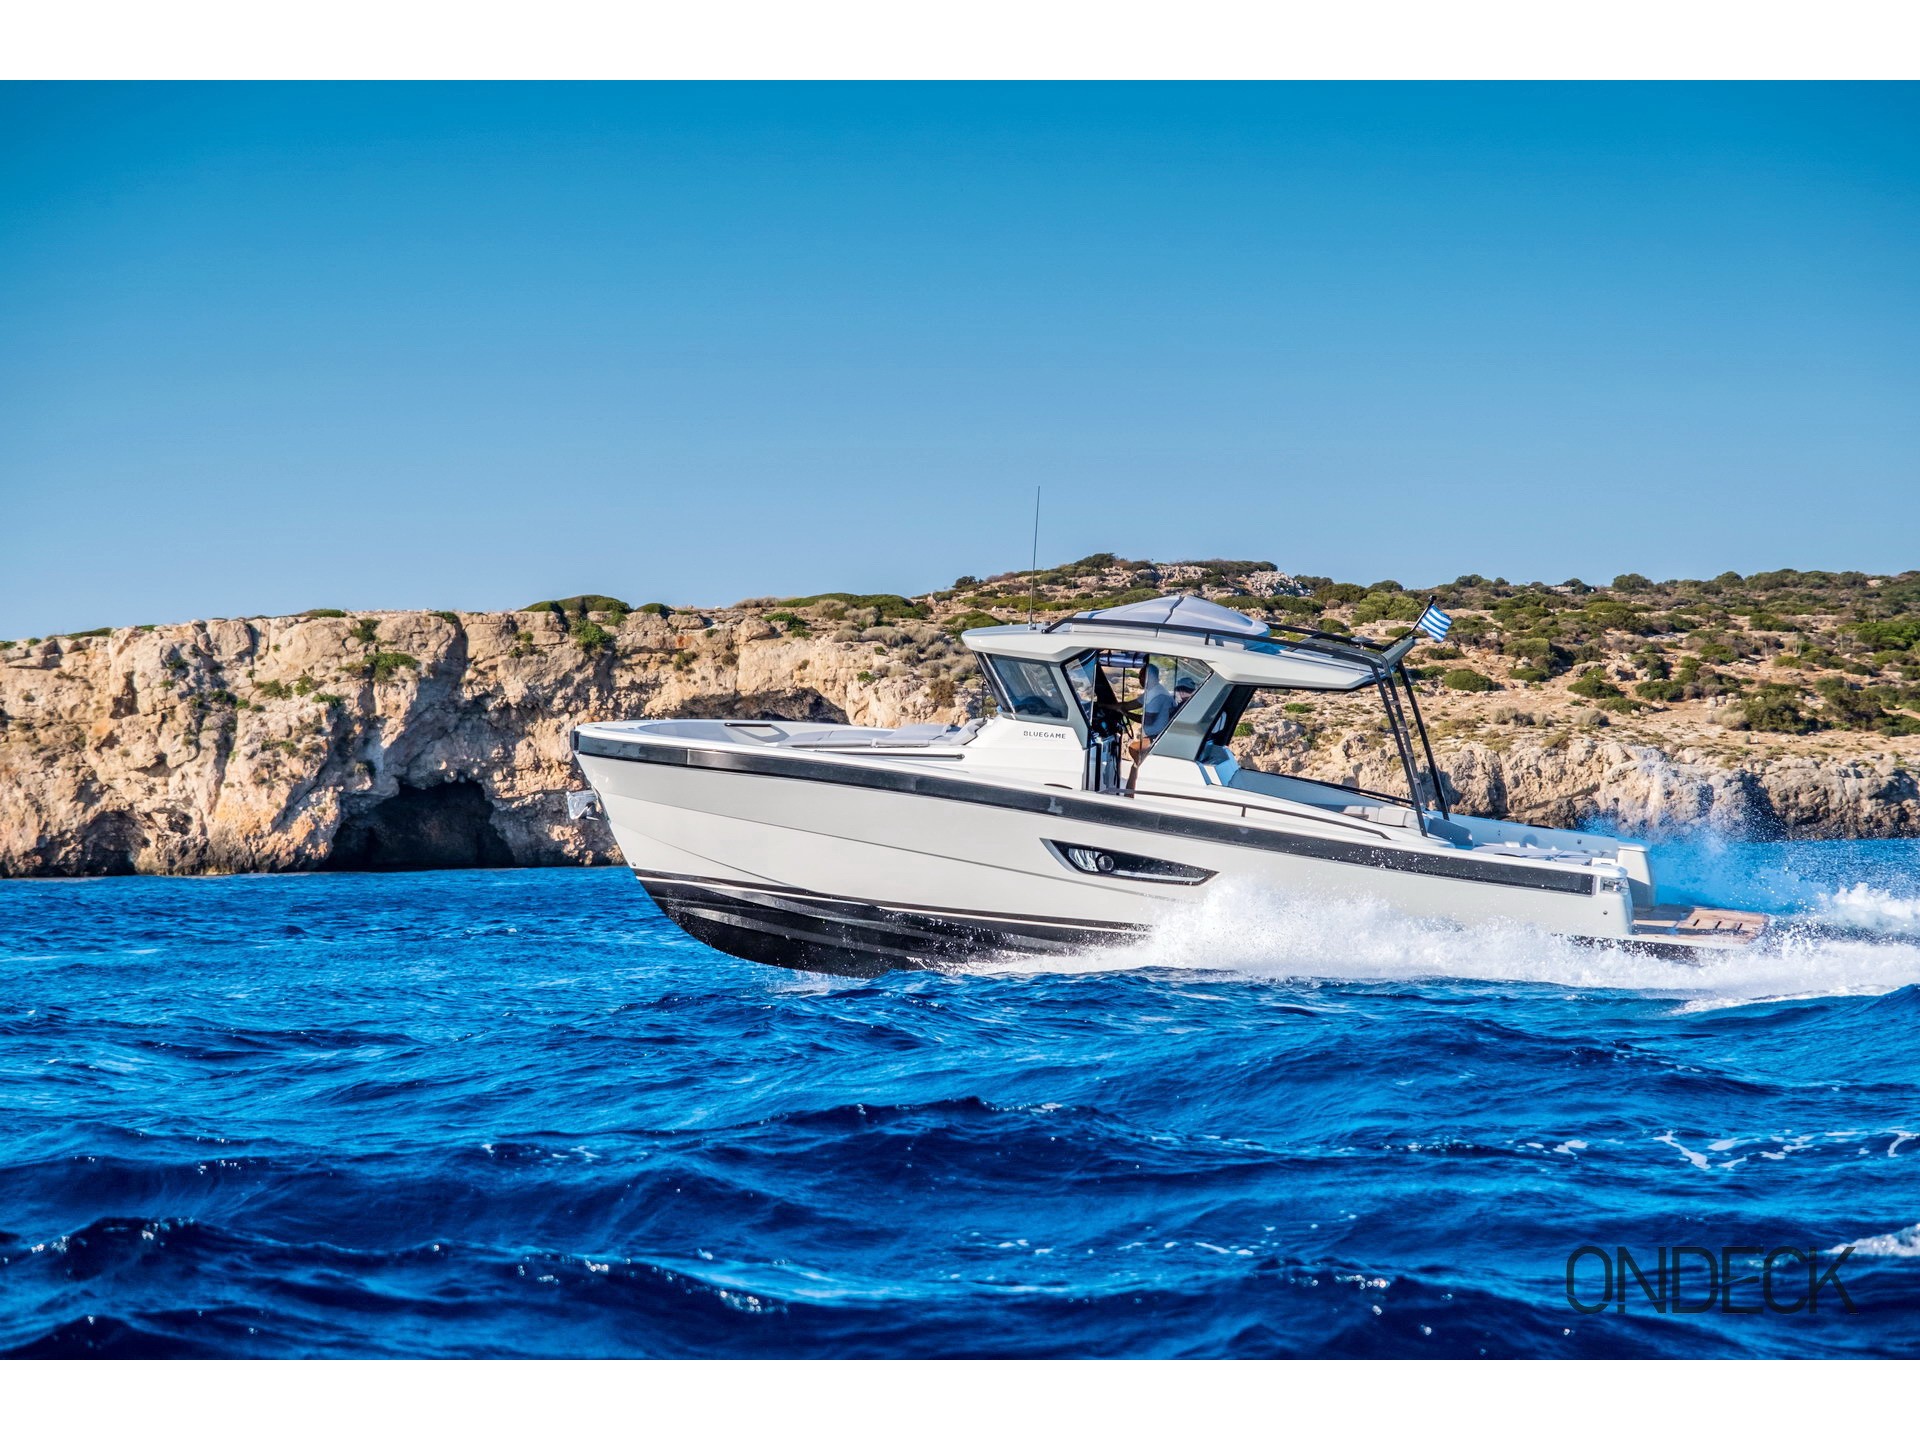 Skipper 30 - Gulet charter worldwide & Boat hire in Greece Cyclades Islands Mykonos Mykonos 1